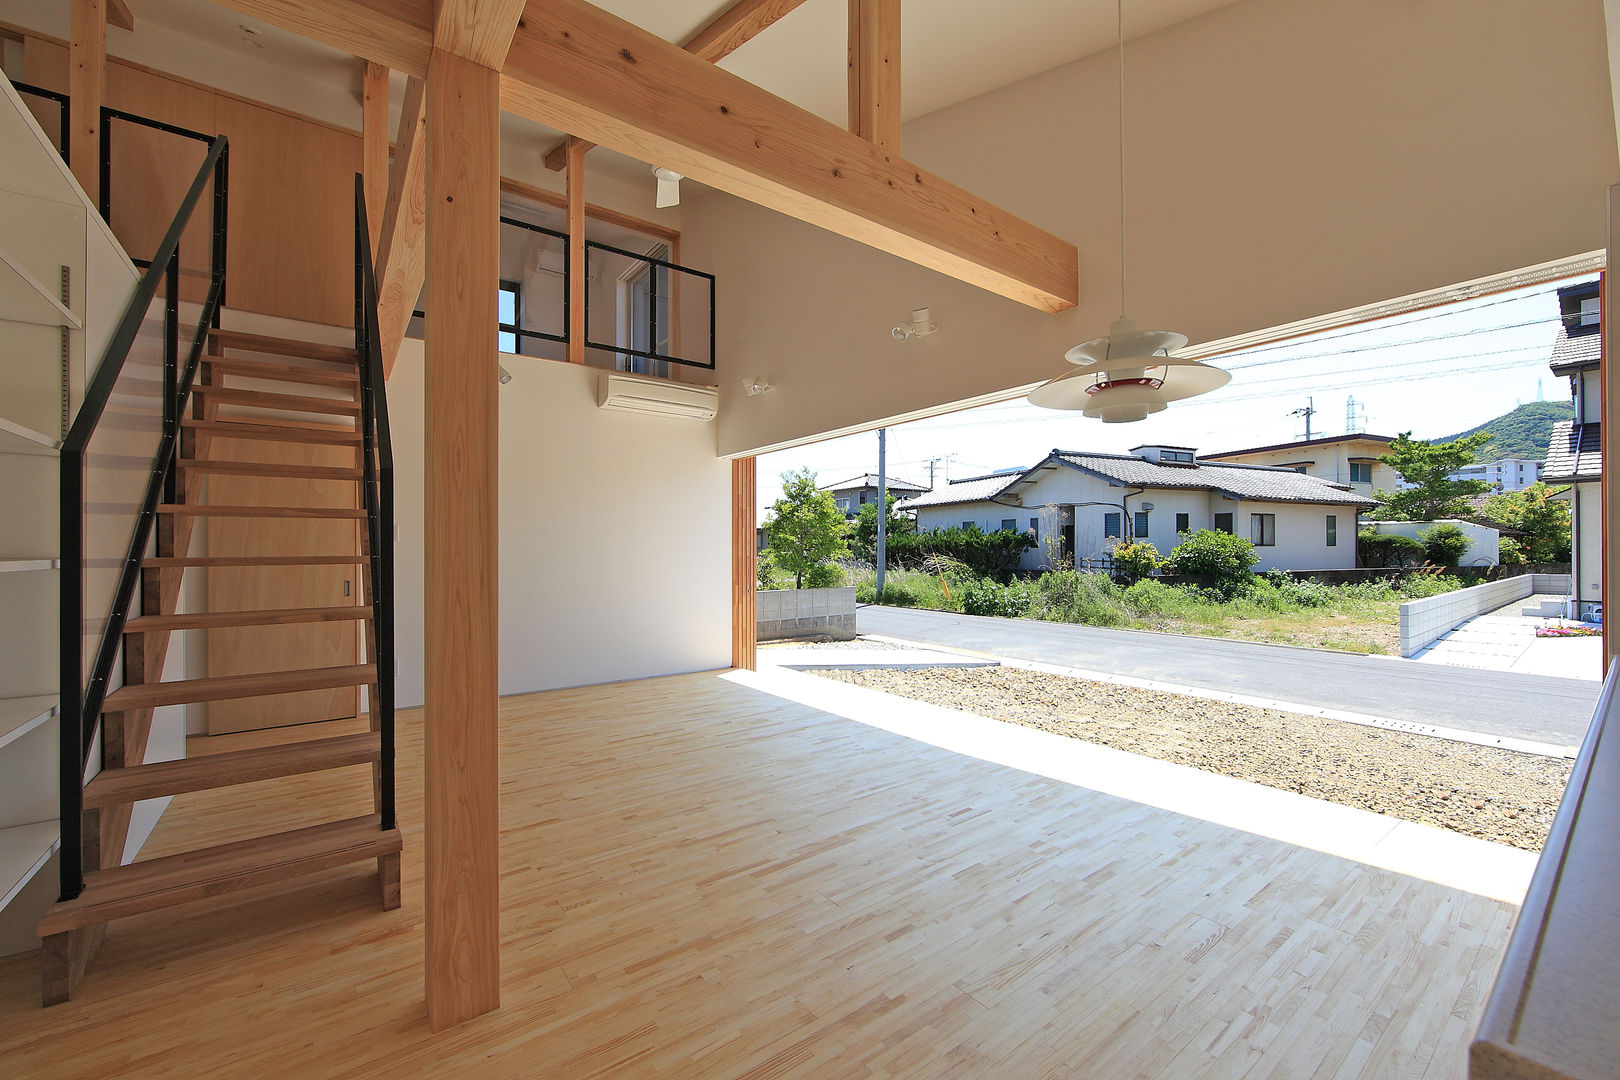 House-S【 ヒトツナガリノイエ 】, bound-design bound-design Salas modernas